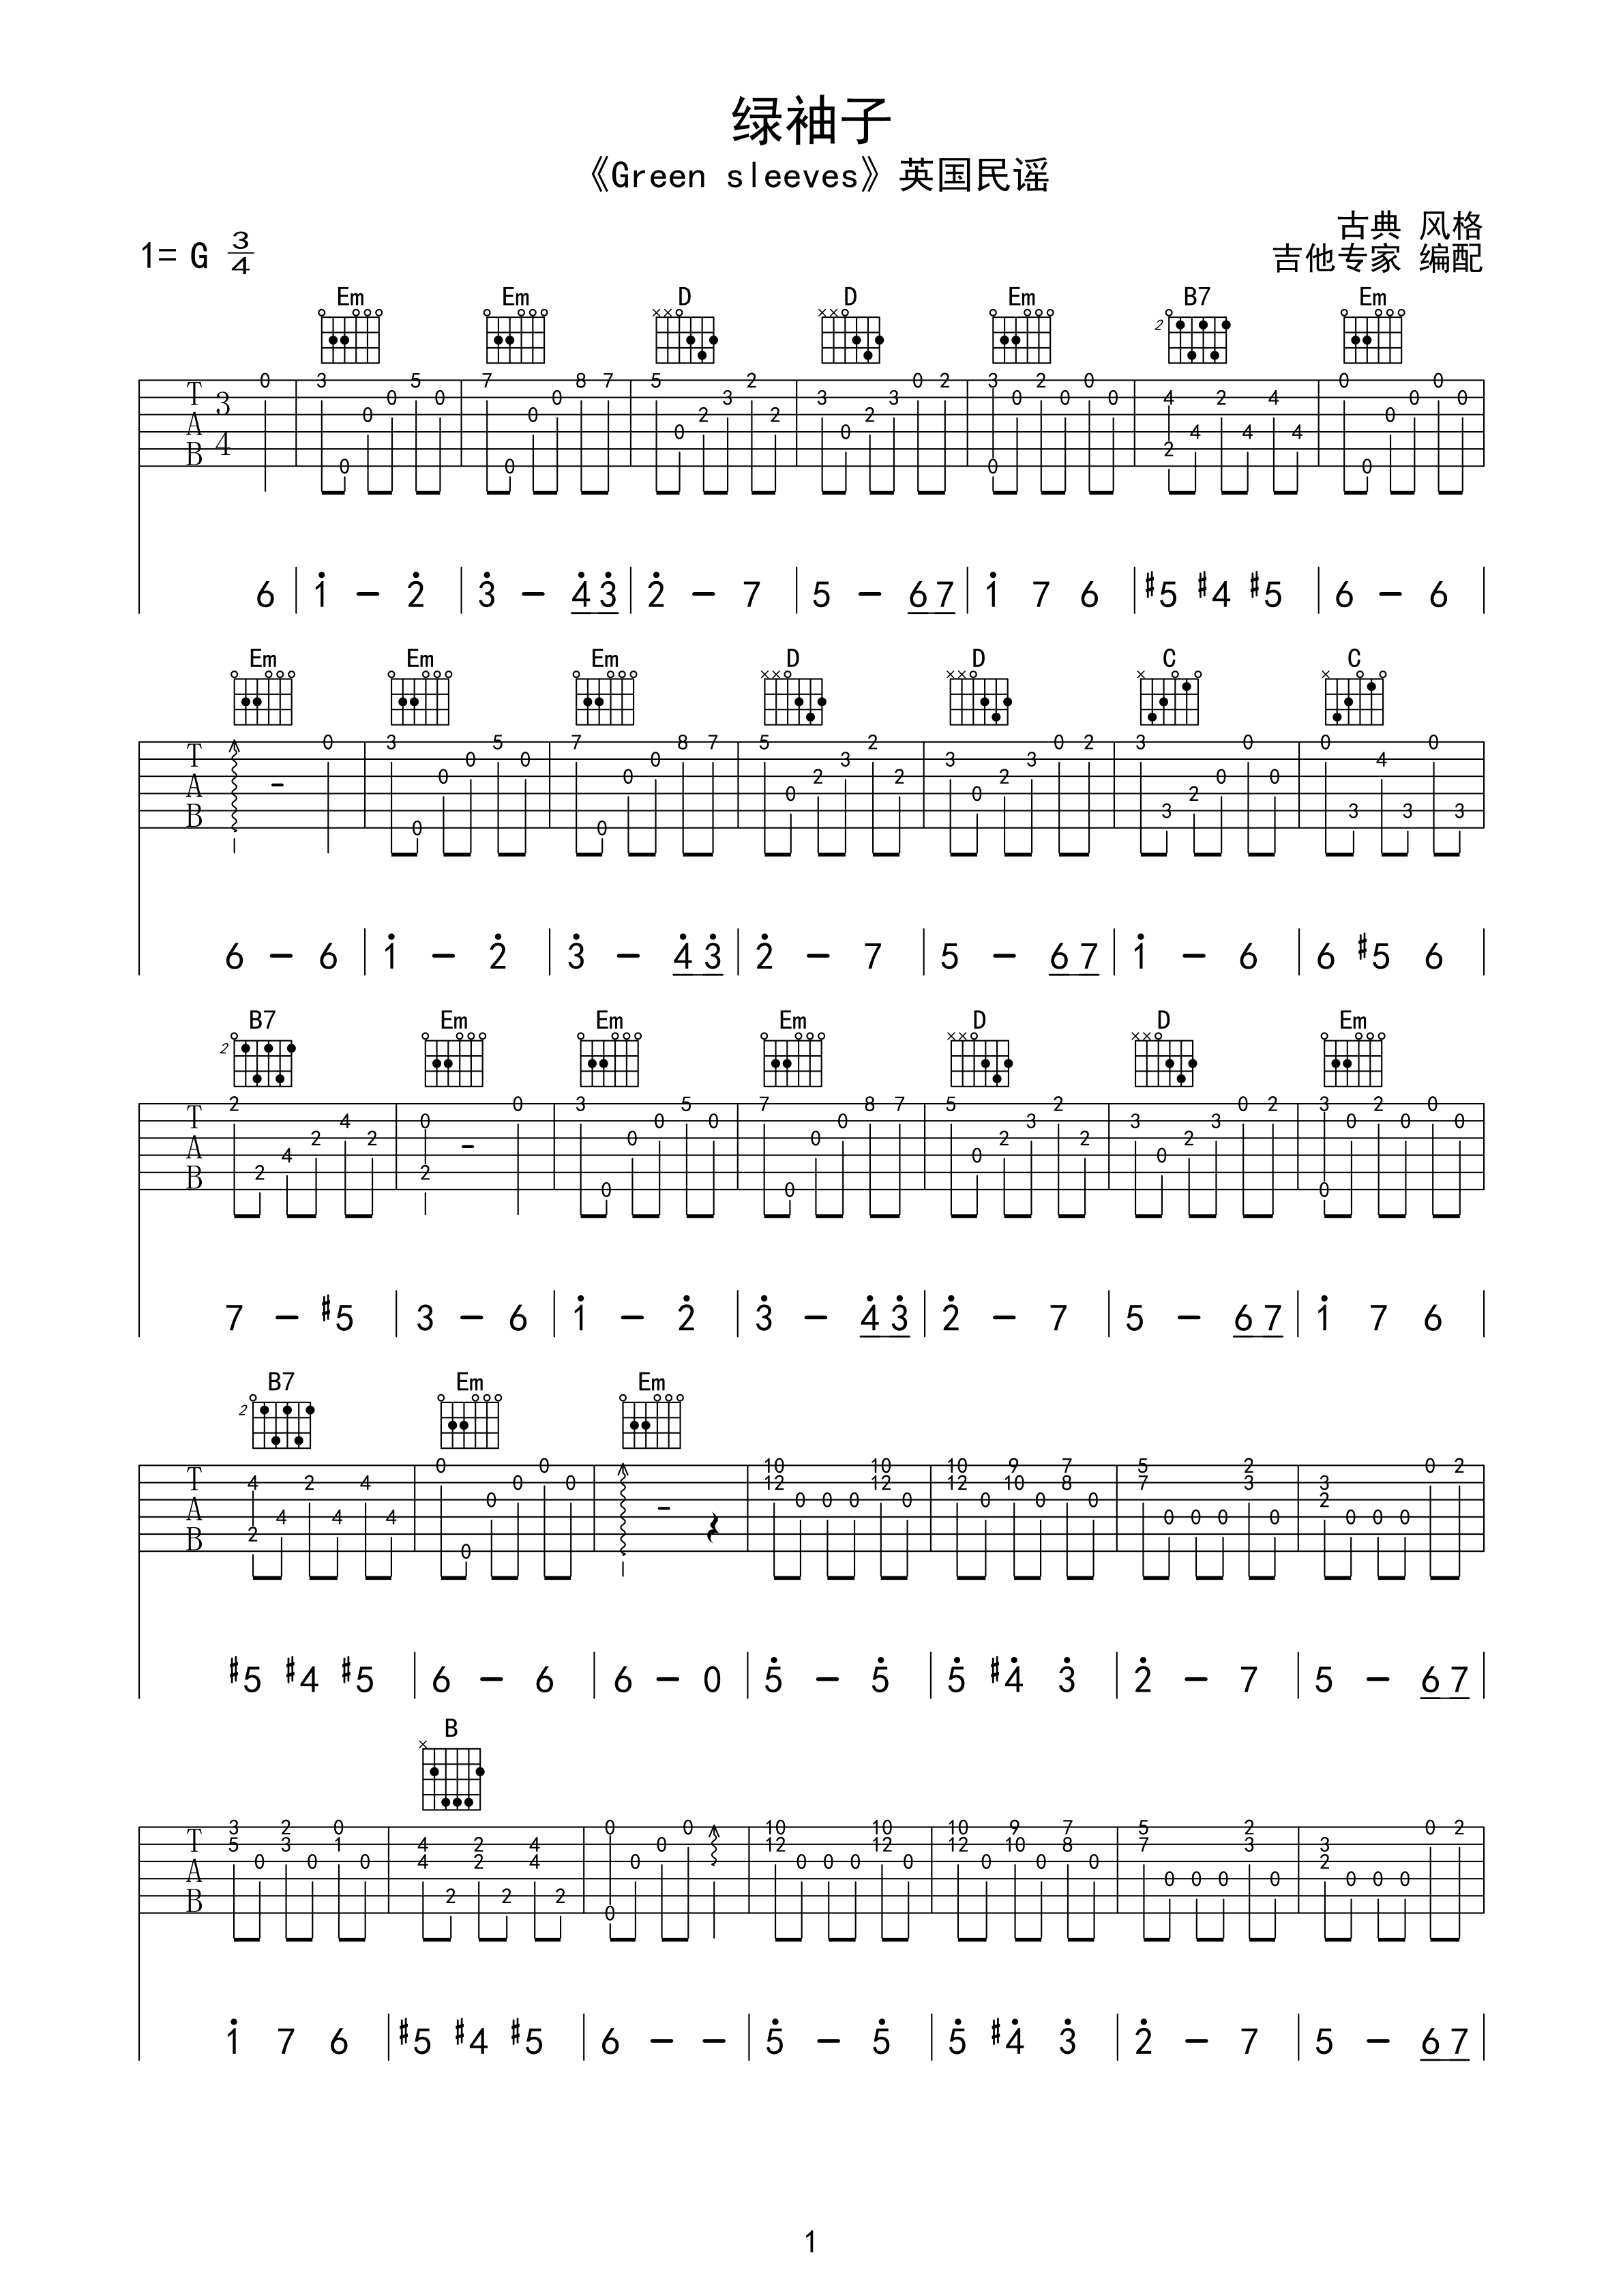 吉他常用分解和弦节奏型-吉他入门 - 乐器学习网